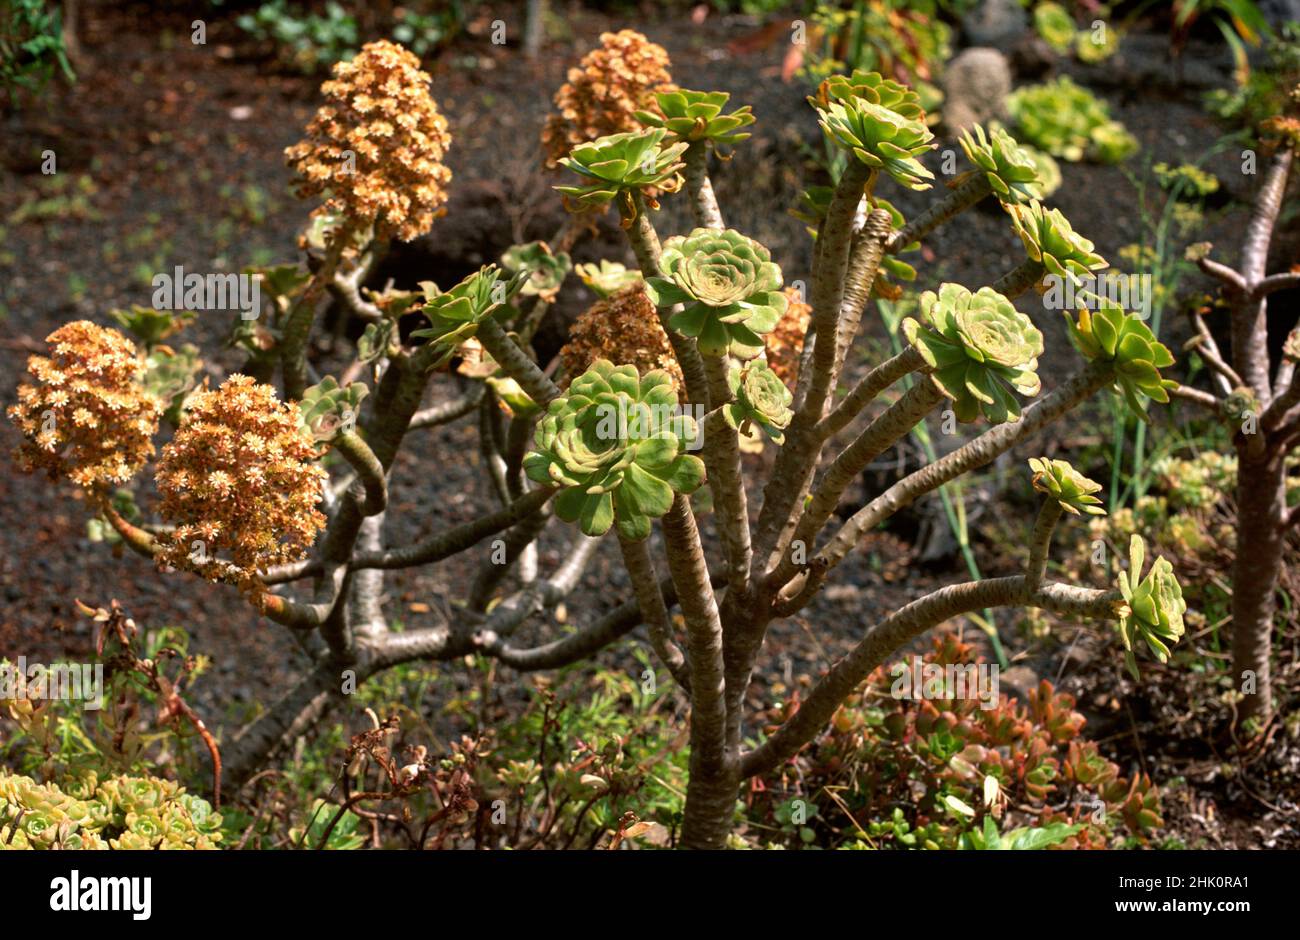 Bejeque arboreo (Aeonium arboreum) Is a succulent shrub endemic to Canary Islands, Spain. Stock Photo